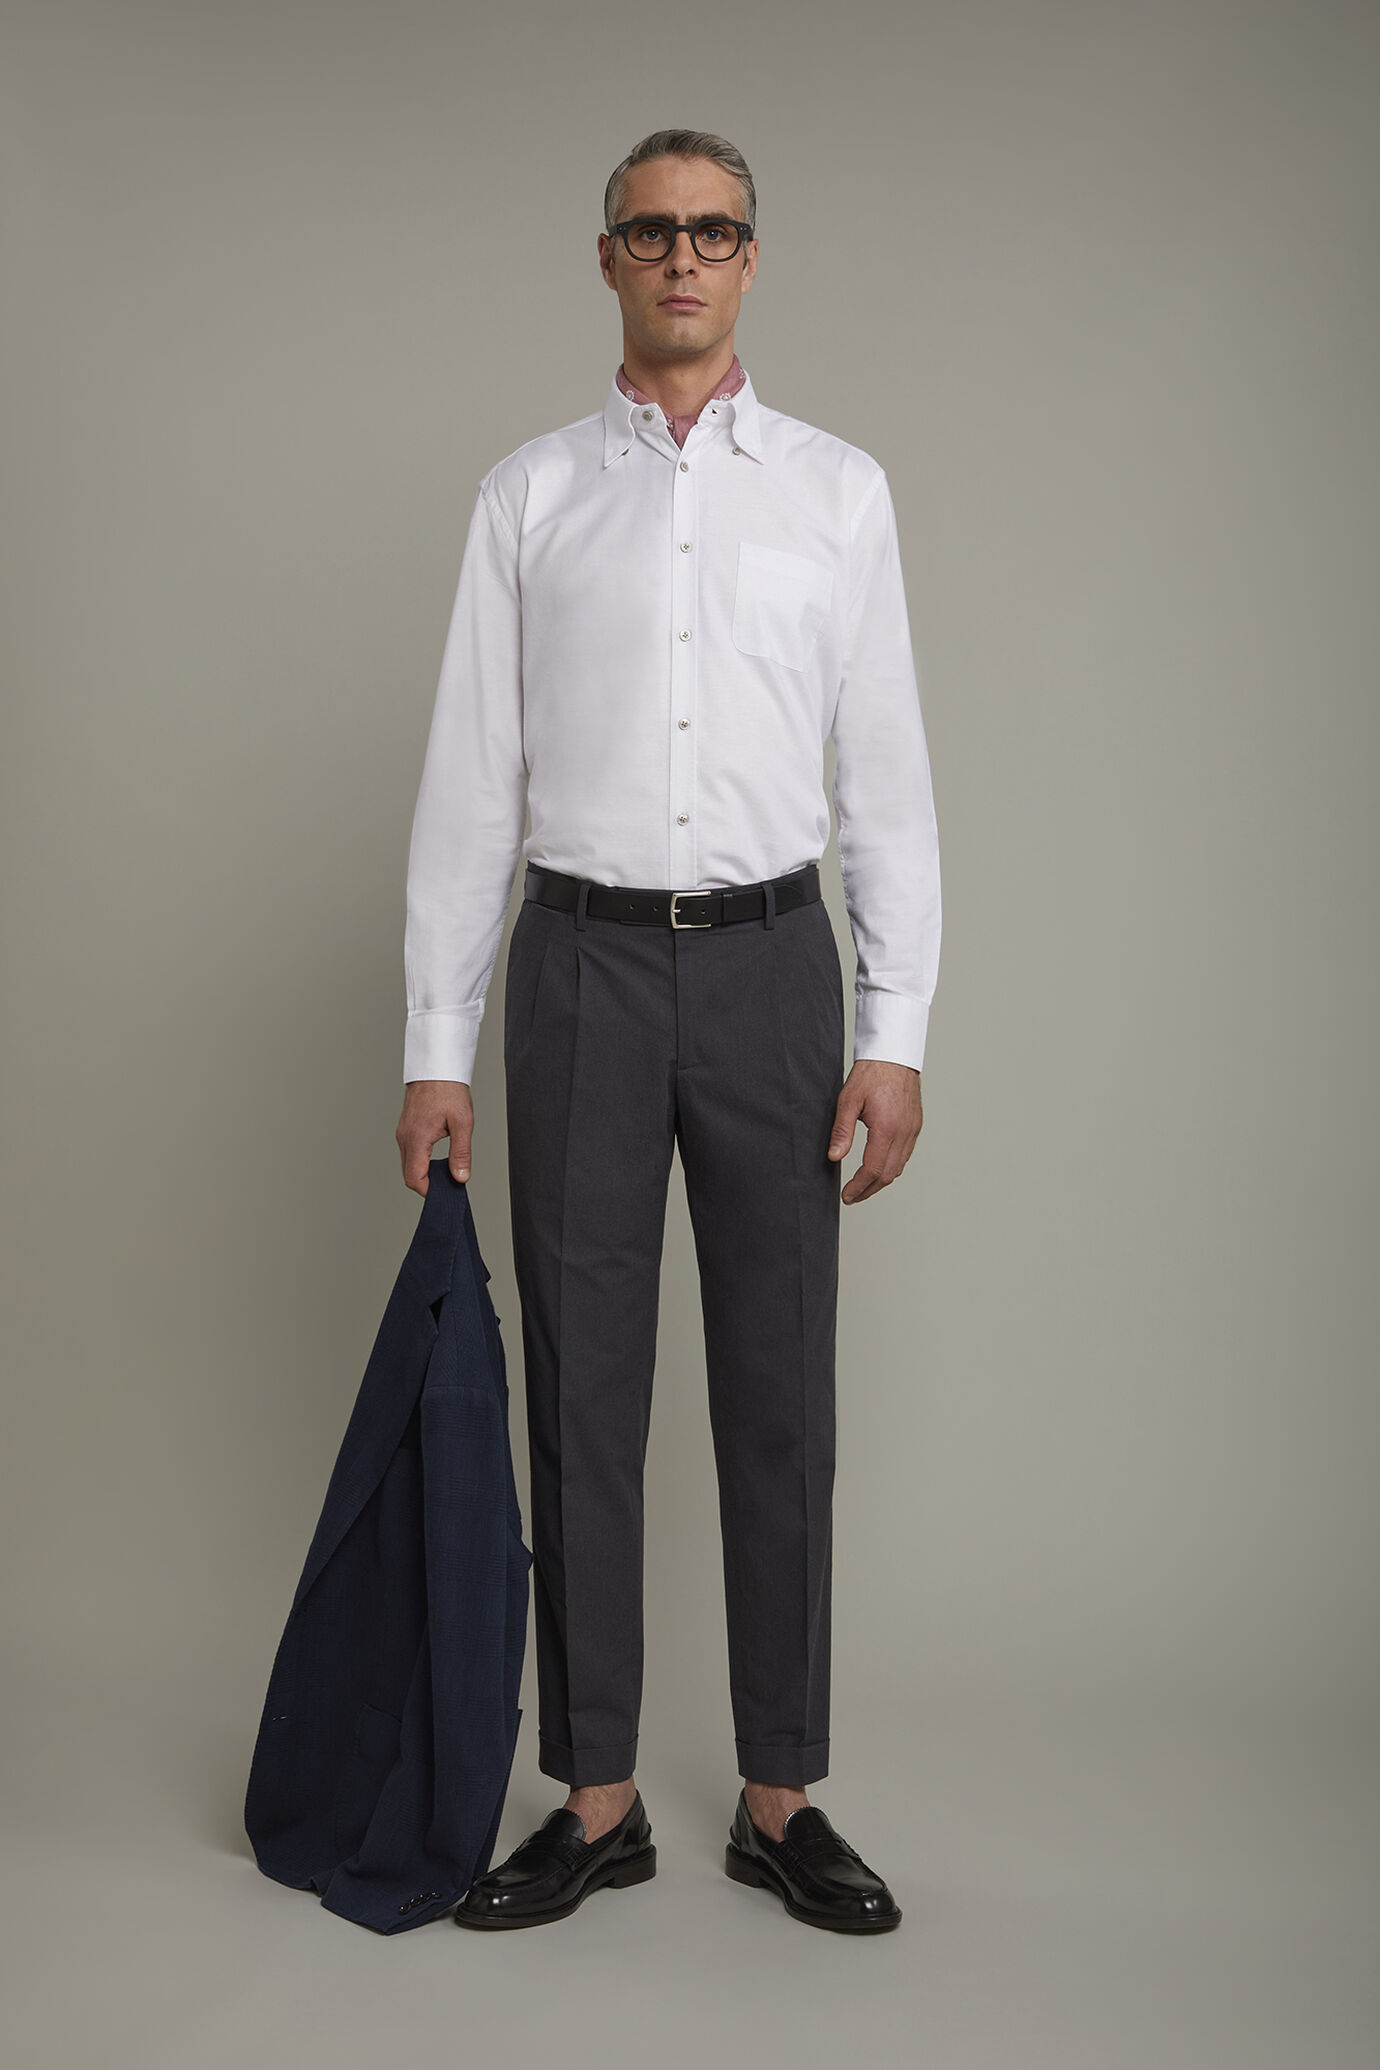 Chemise classique pour homme à col boutonné, tissu uni oxford ultra léger à rayures, coupe confort